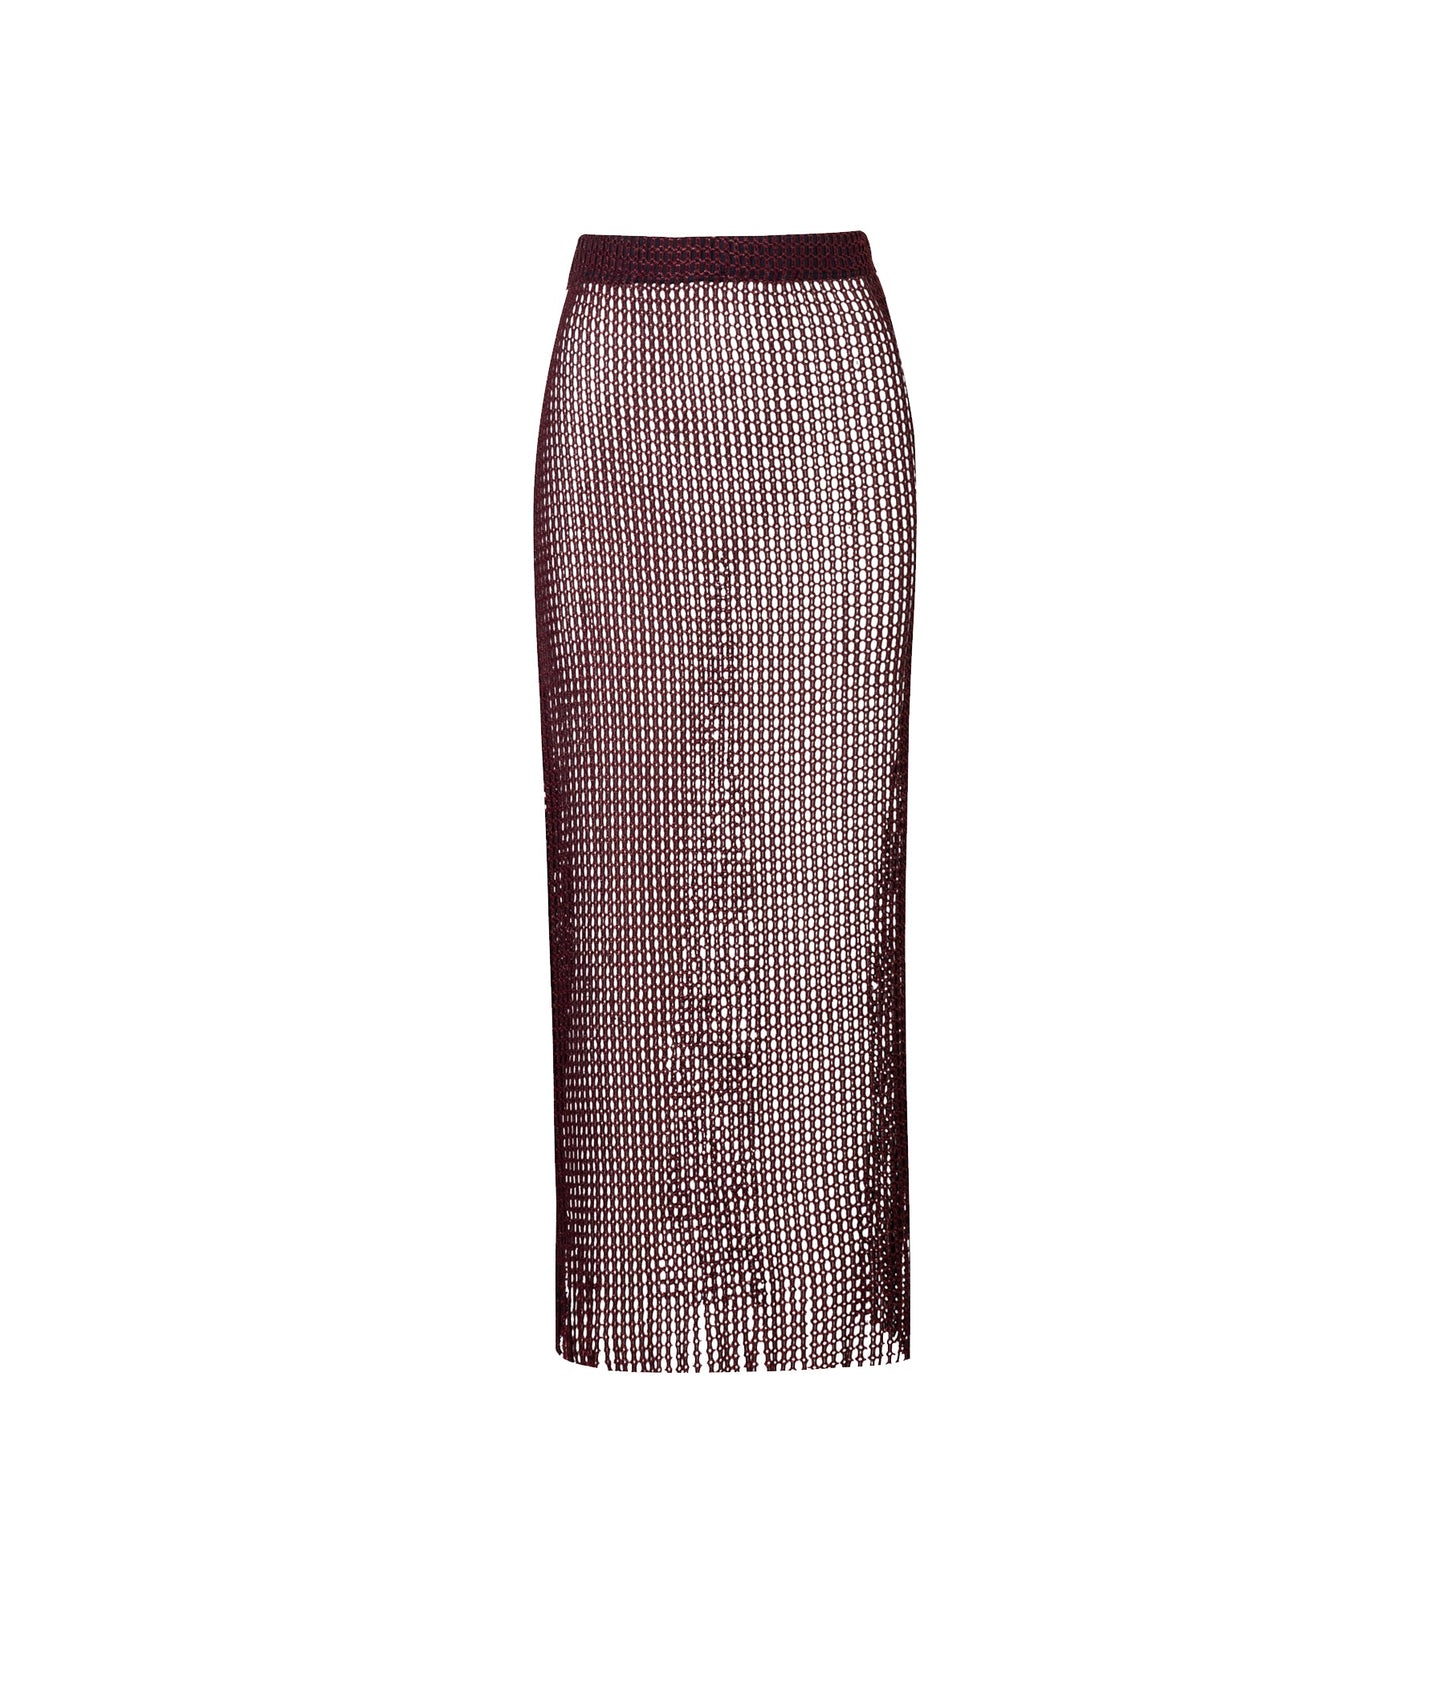 Verdelimon - Net -Skirt - Wine - Front